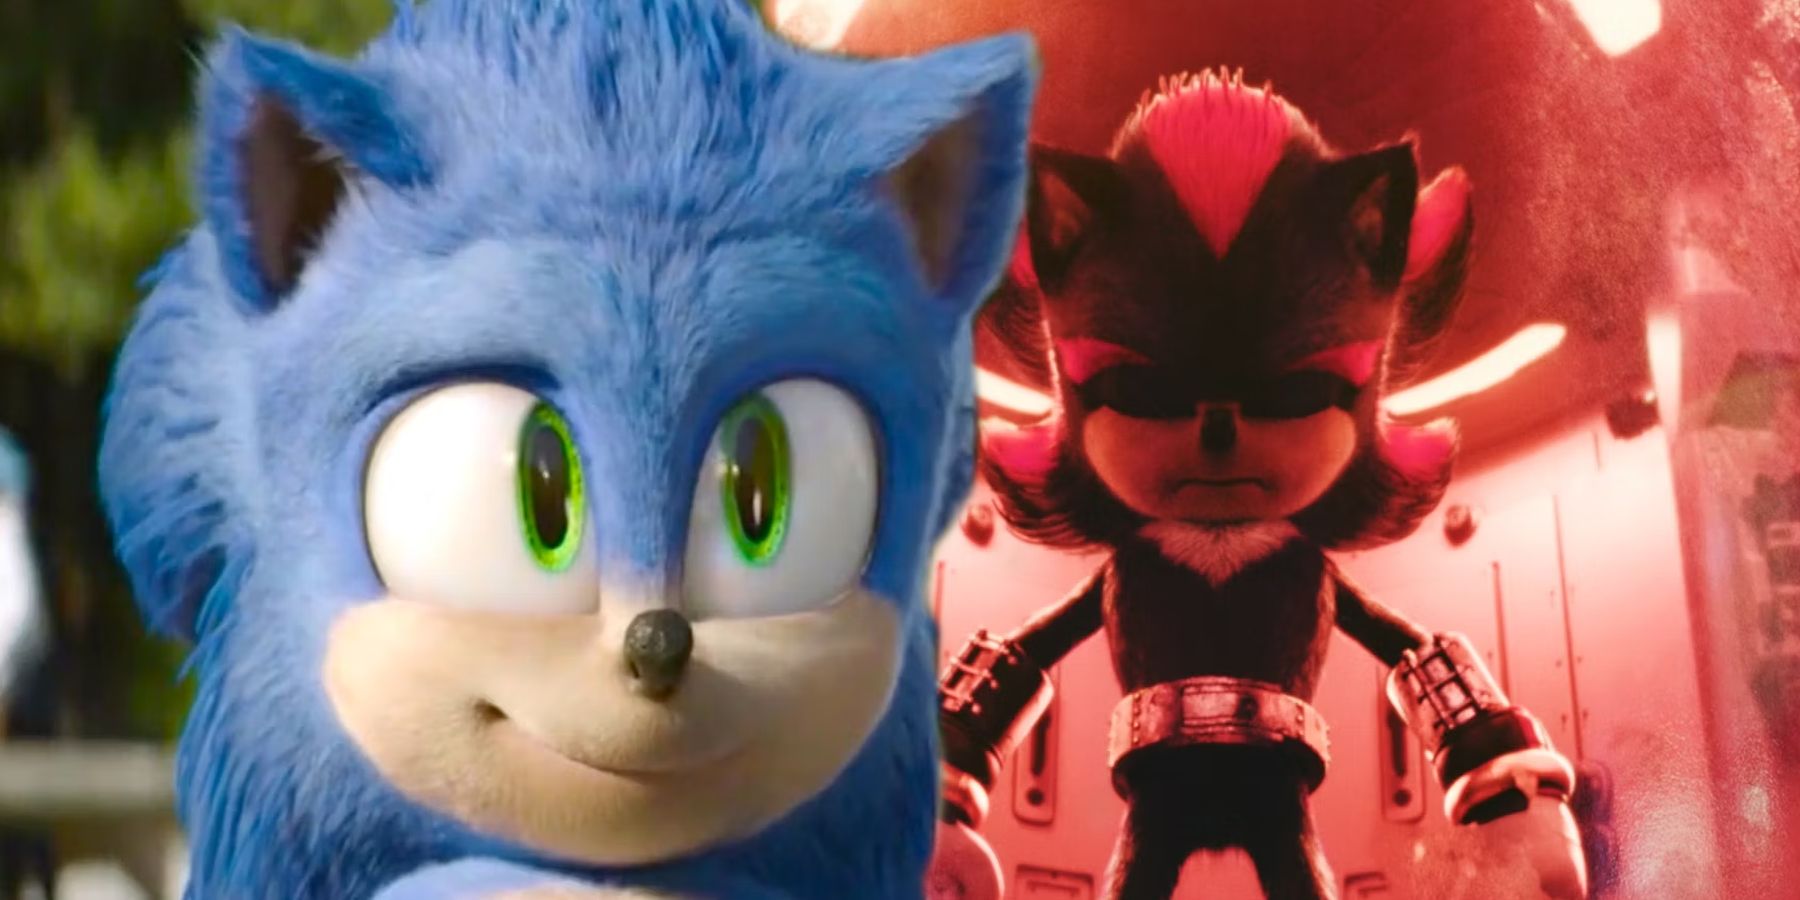 Sonic The Hedgehog 3 Star confirma una importante actualización de producción en una foto de BTS